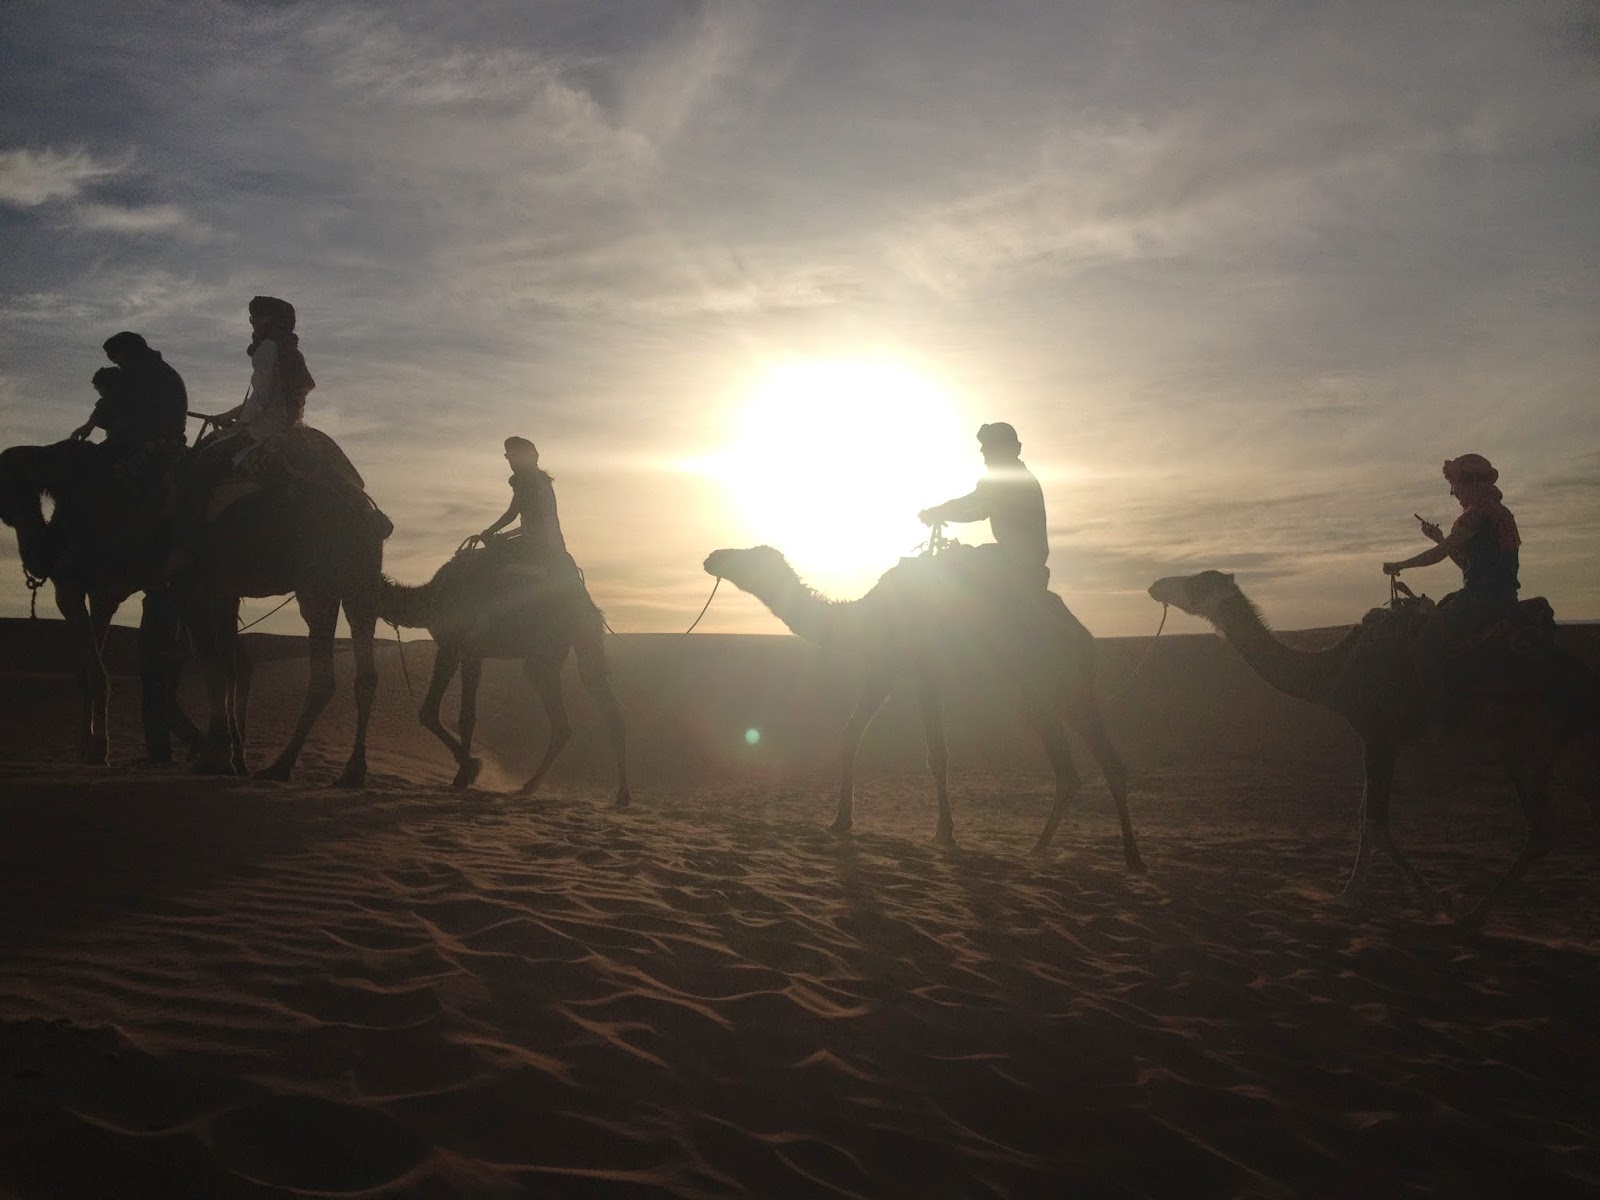 De Marrakech a Chegaga - Ruta de 6 días por el sur de Marruecos (9)